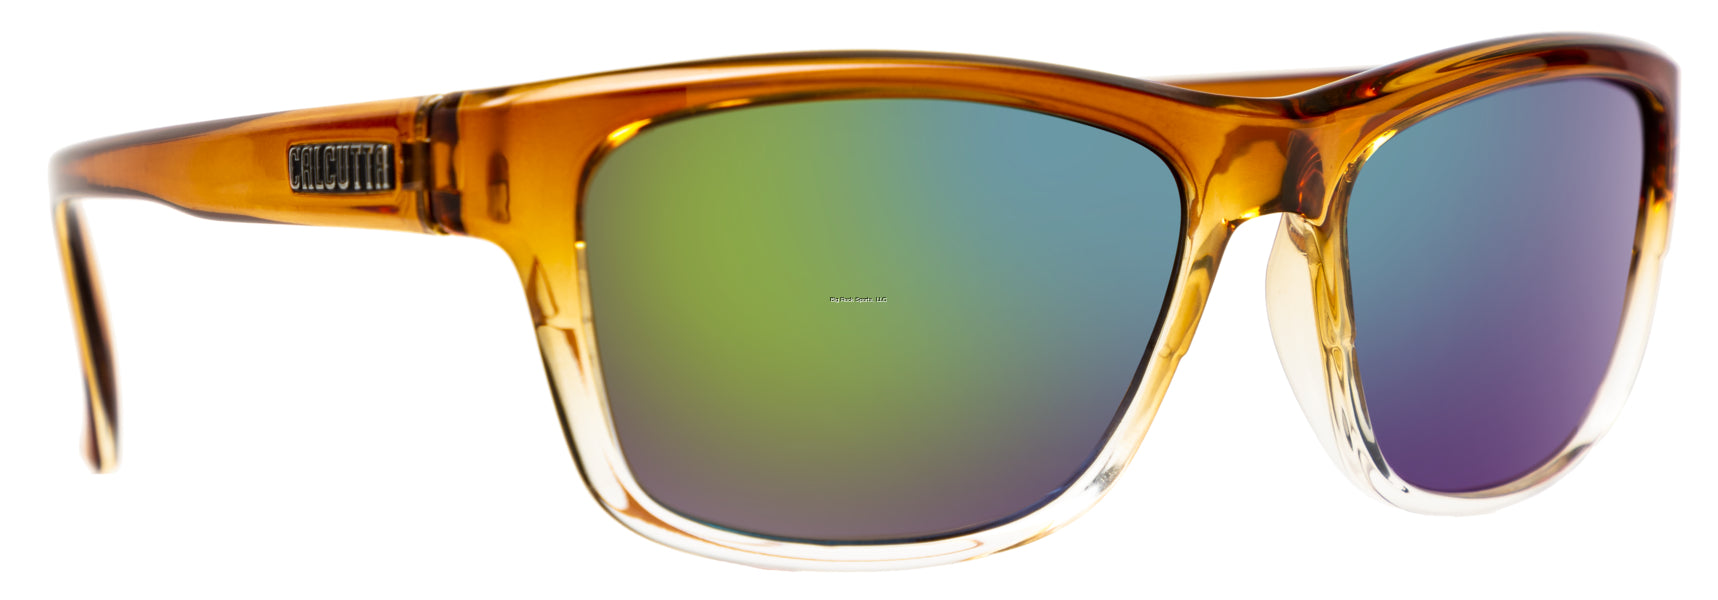 Calcutta Finley Discover Series Sunglasses